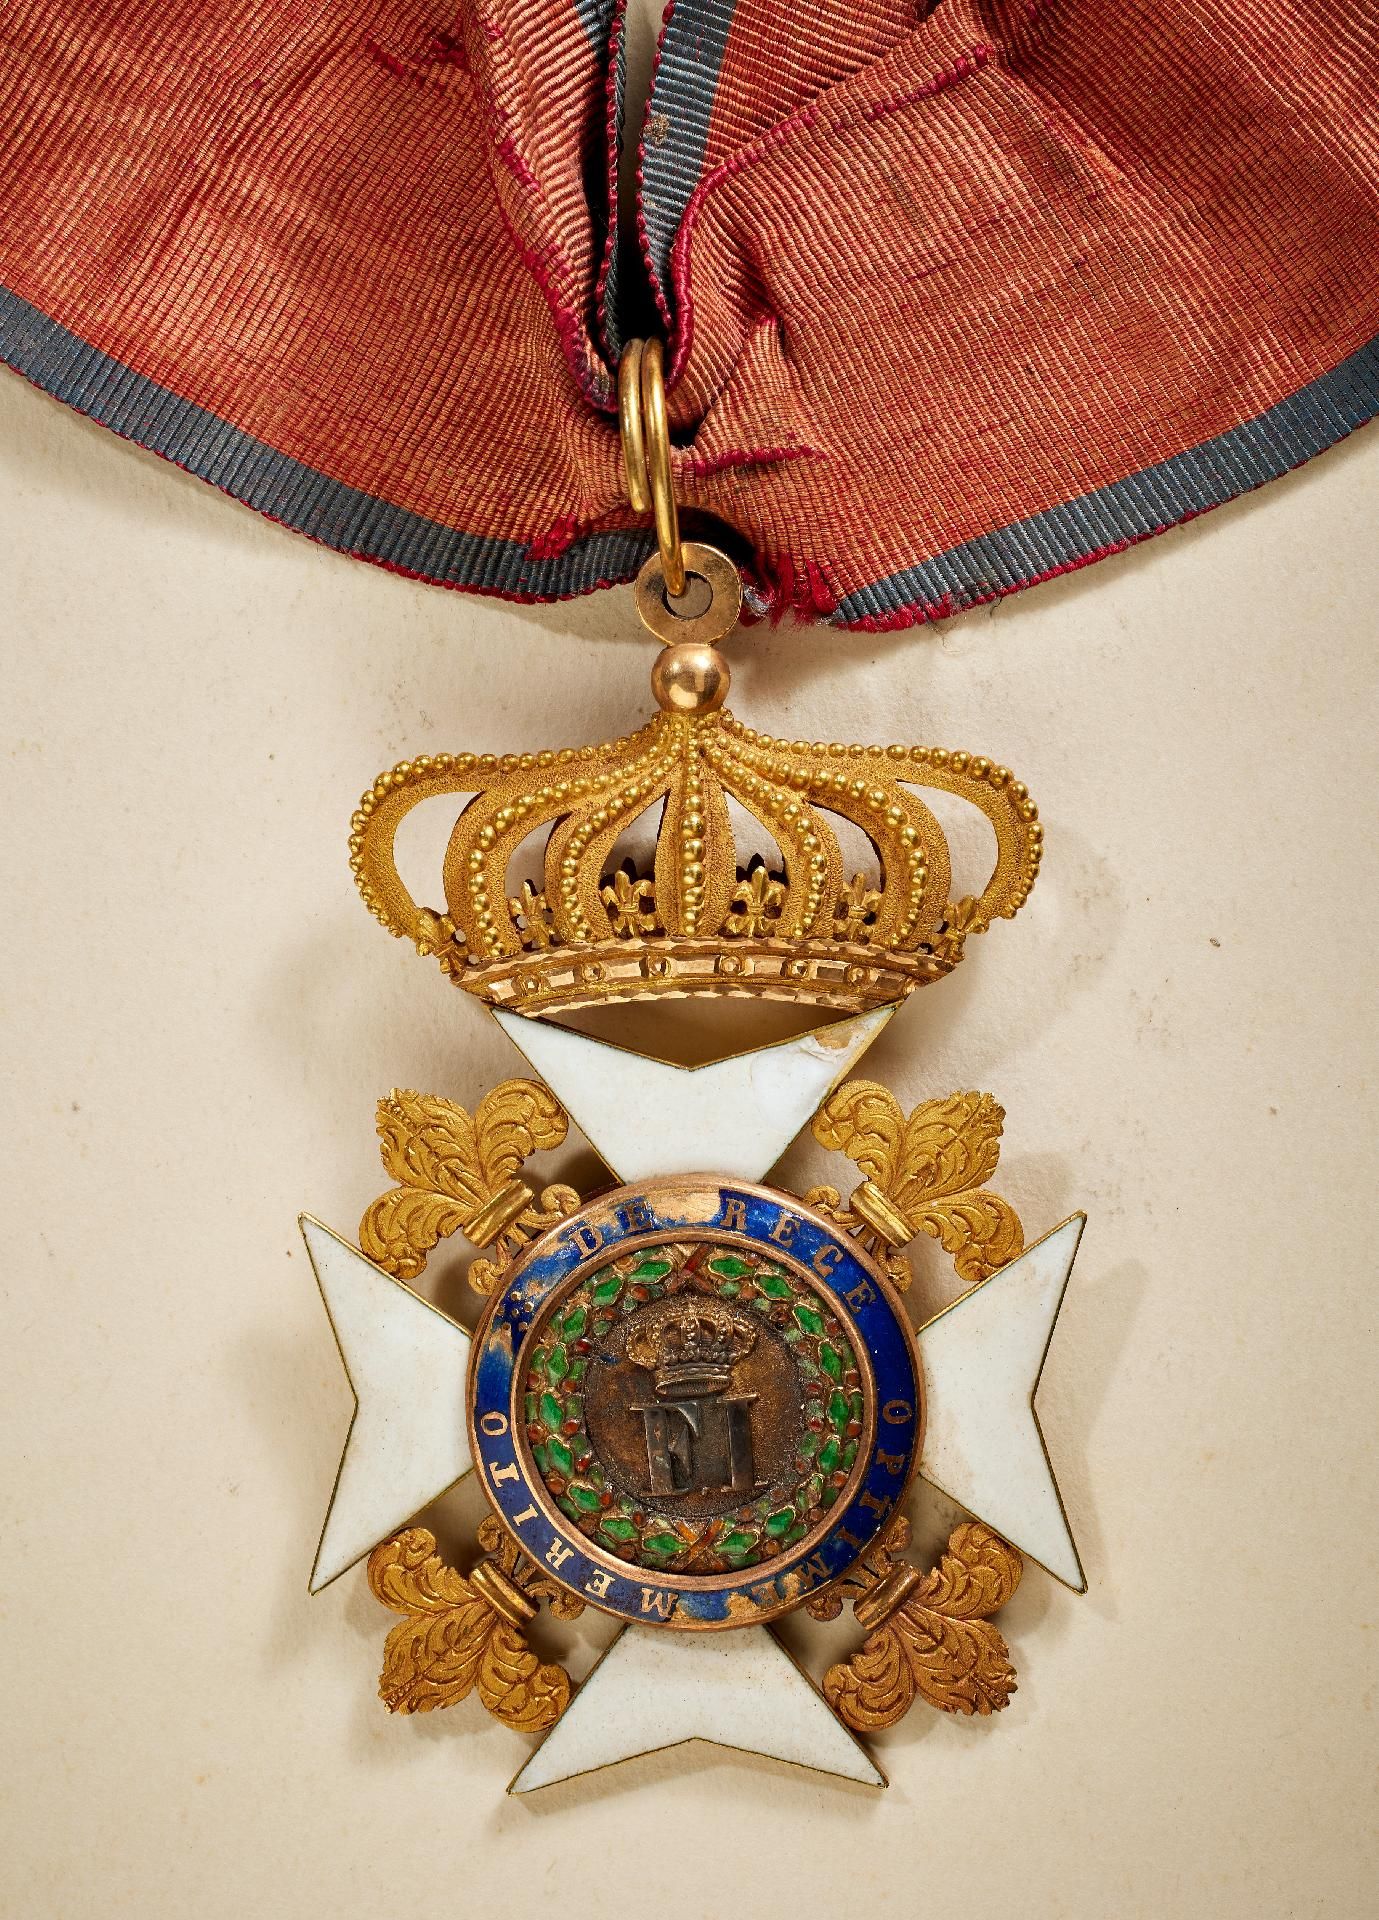 Königreich beider Sizilien : Orden Franz I. - Kommandeurkreuz. - Image 3 of 3